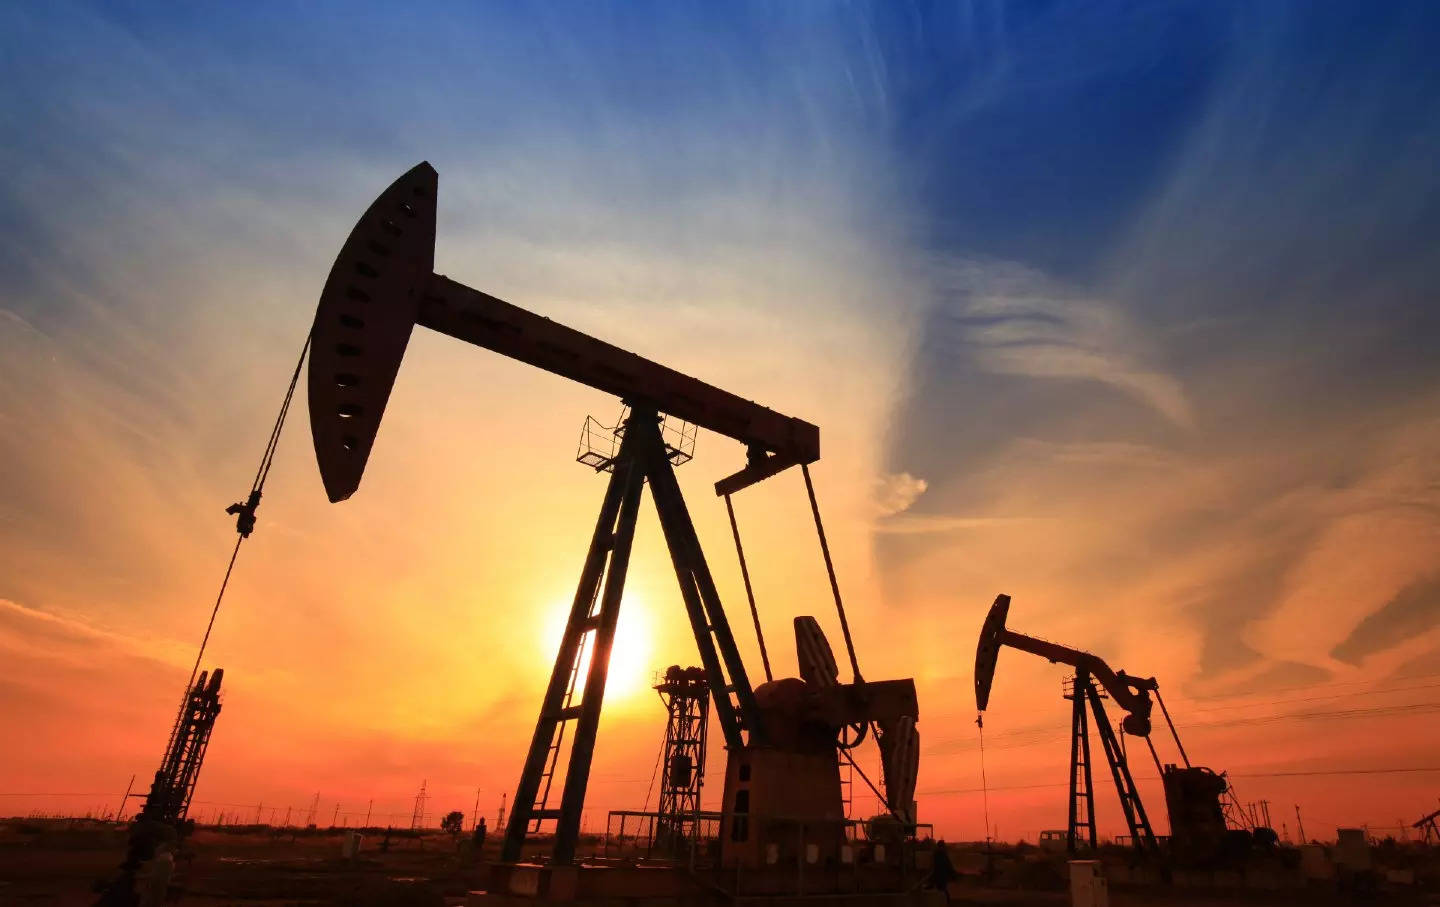 ब्याज दर वृद्धिको अनुमान गर्दै: तेलको मूल्यमा गिरावट